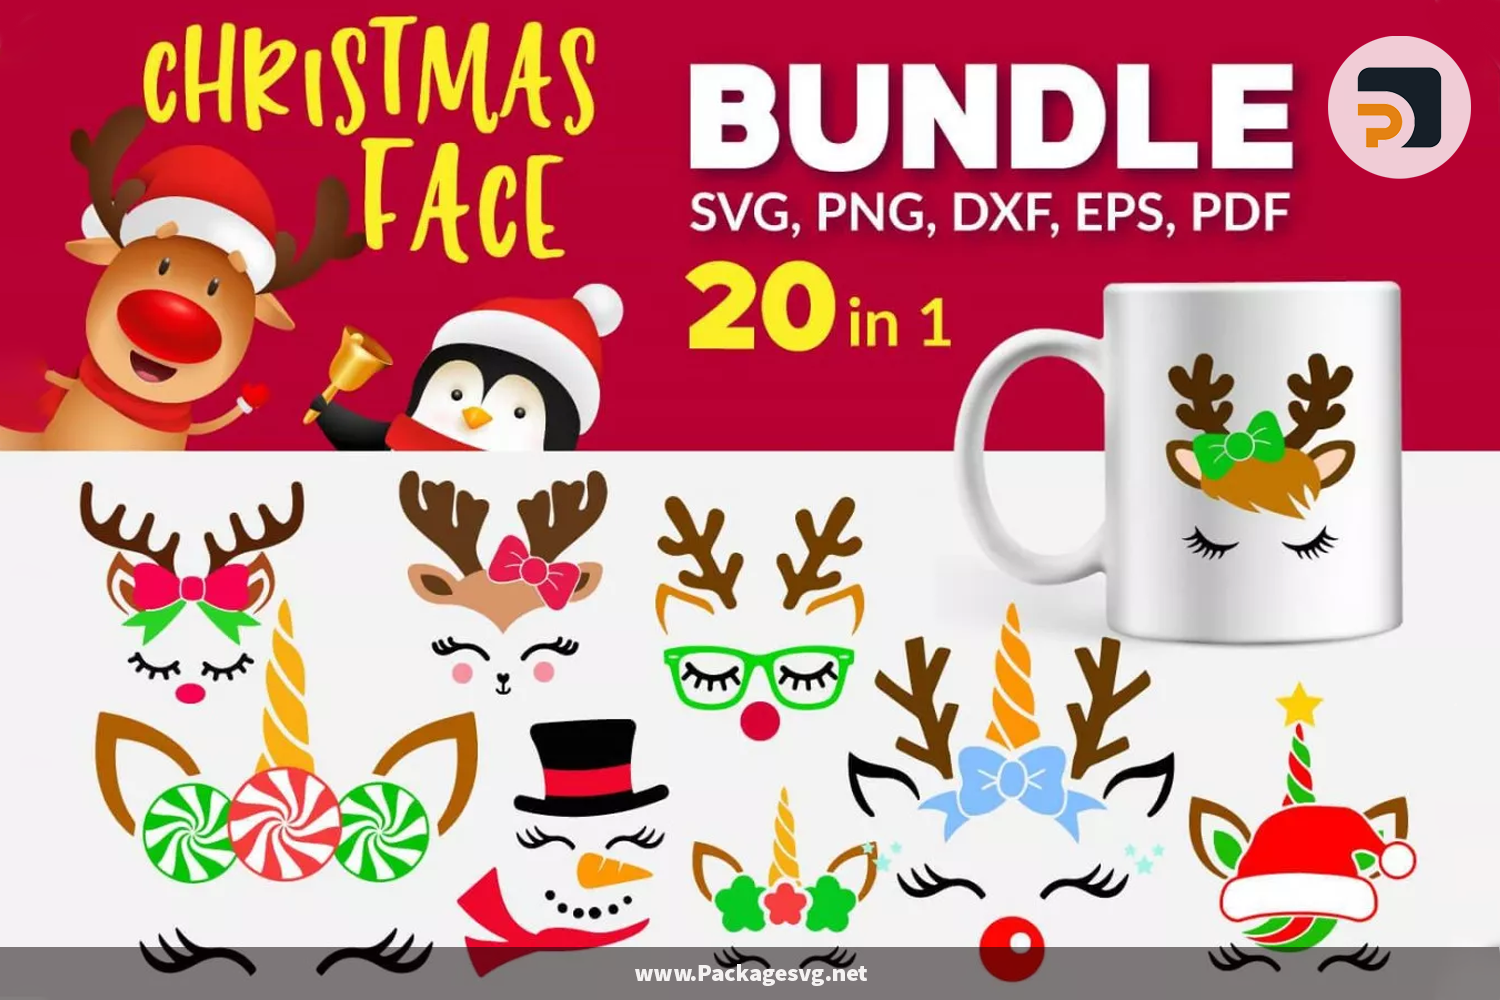 Christmas Face SVG Bundle